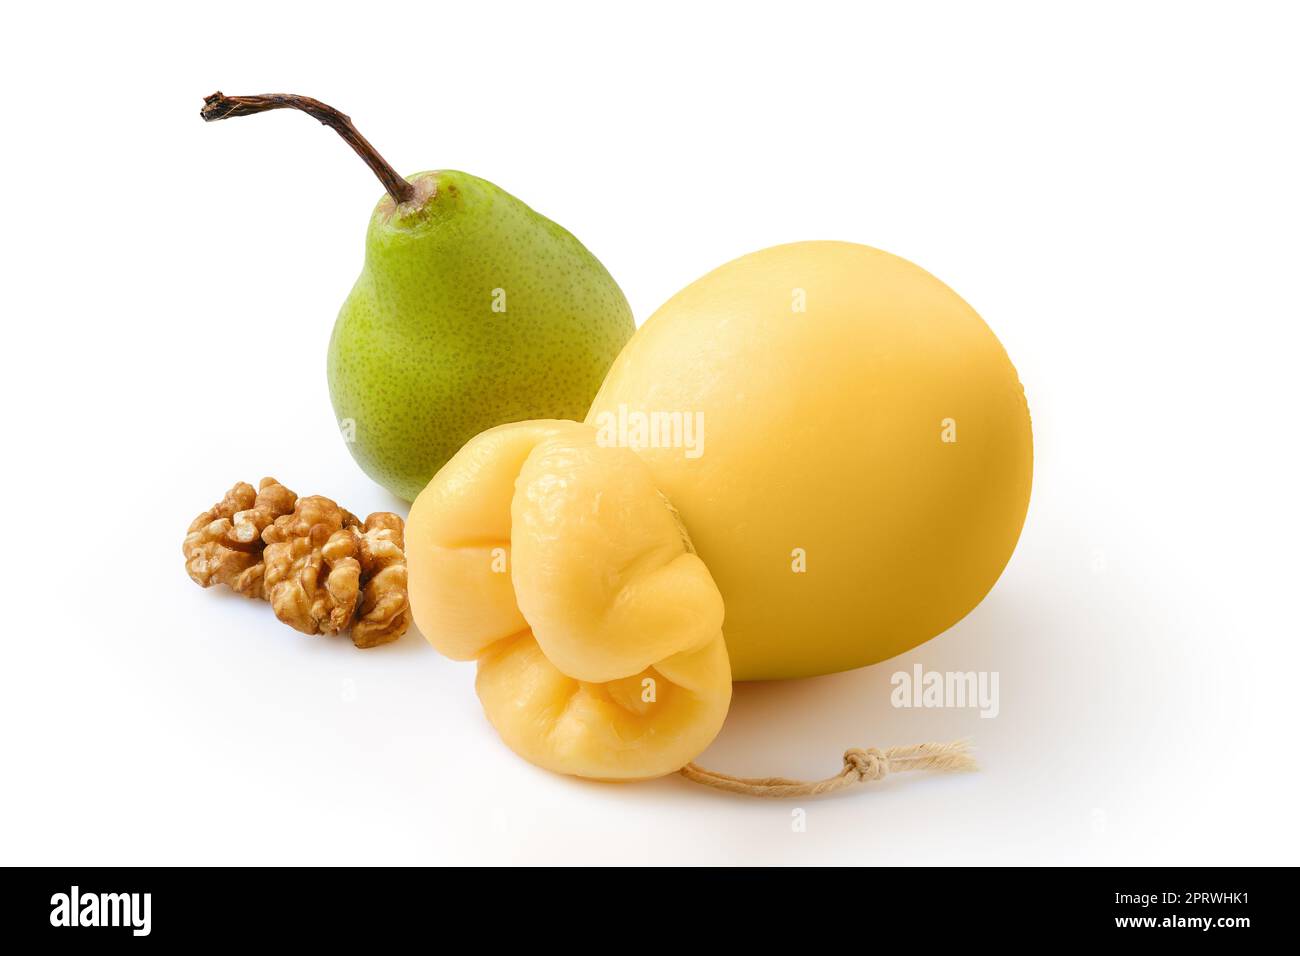 Caciocavallo estratto o scamorzza formaggio giallo italiano con pera e noce Foto Stock